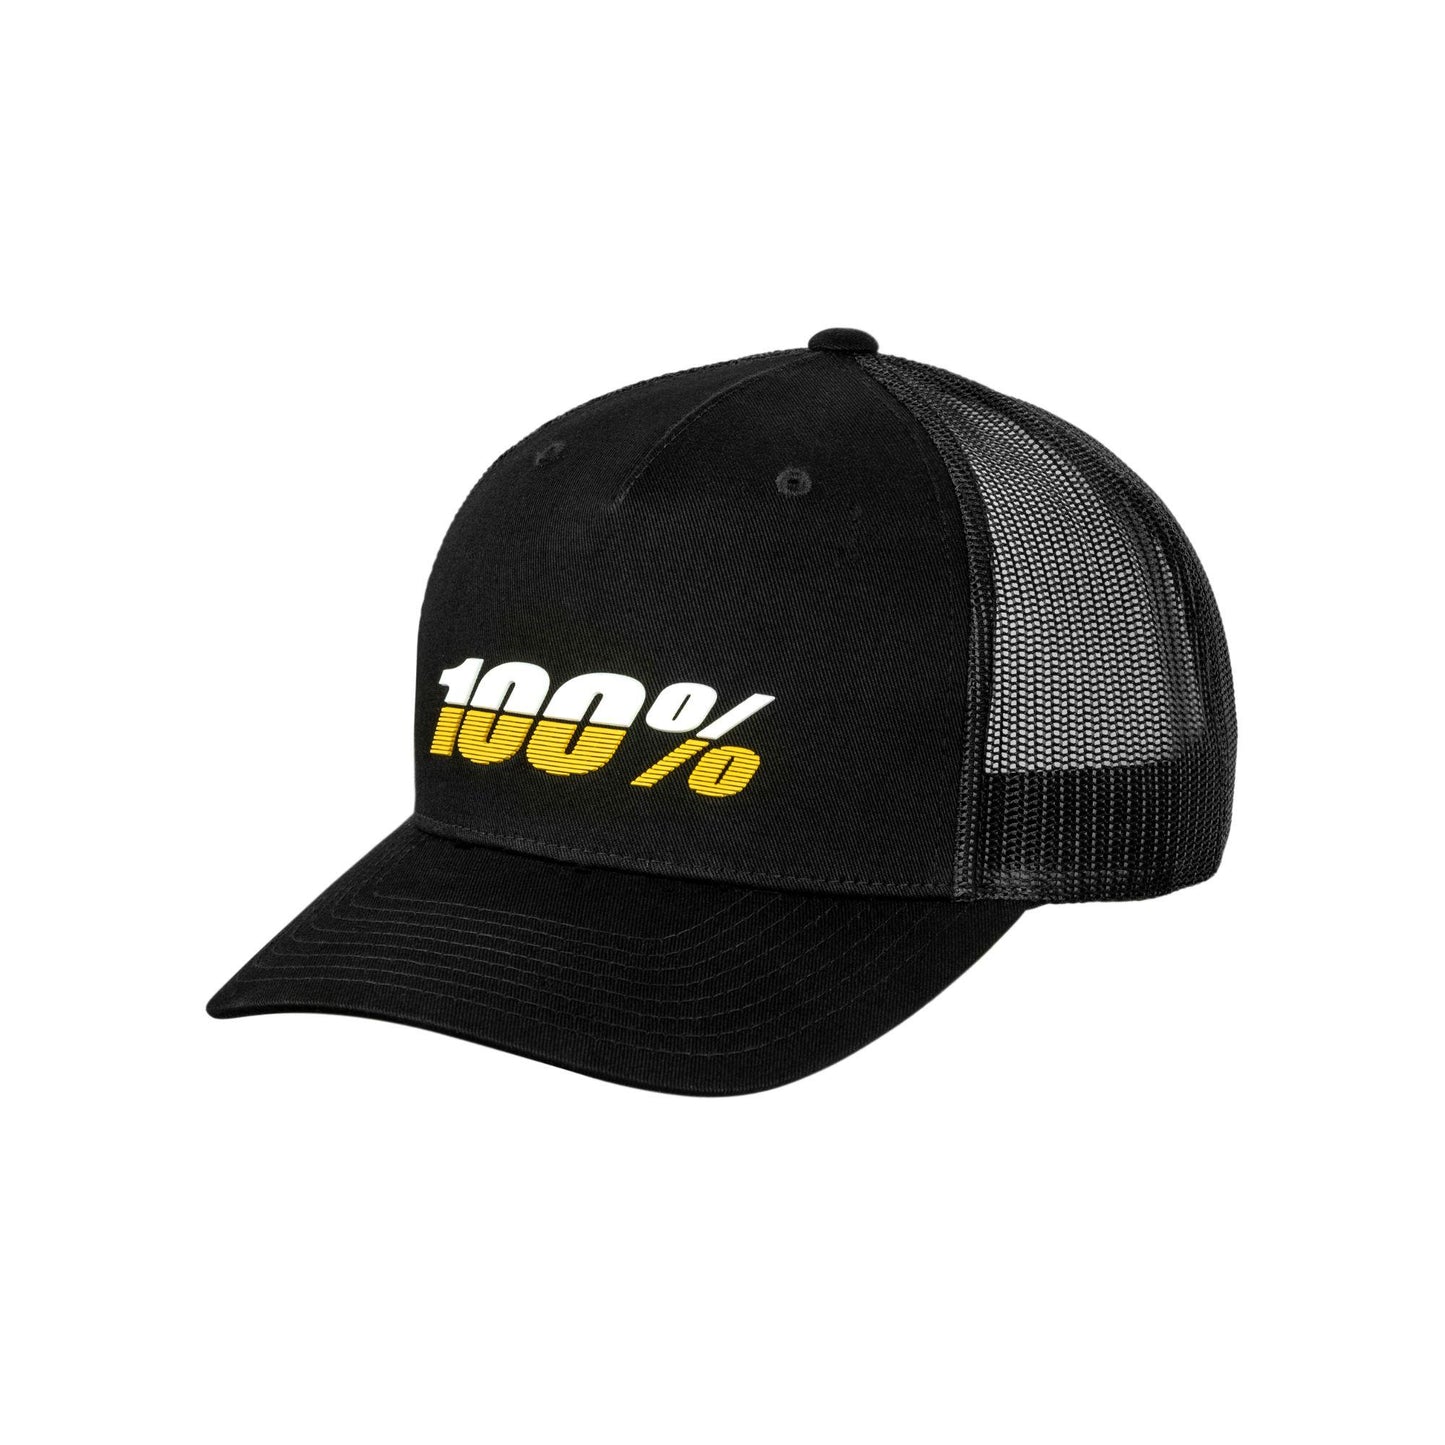 100% League X-Fit Snapback Hat